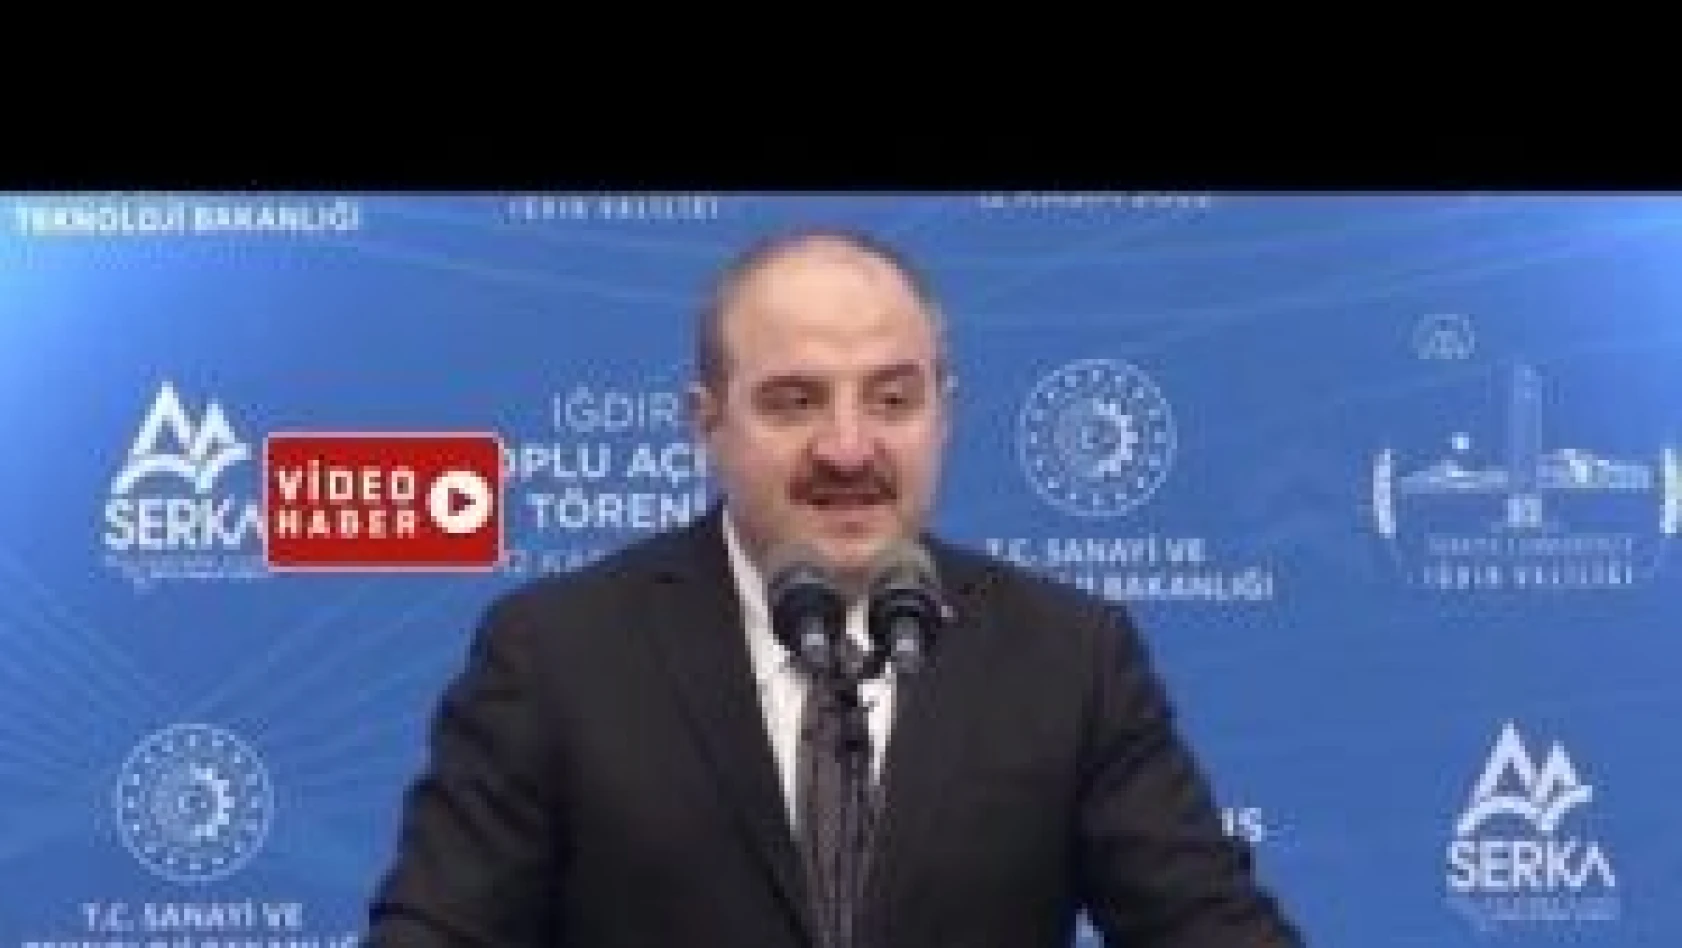 Sanayi ve Teknoloji Bakanı Mustafa Varank, Iğdır'da toplu açılış törenine katıldı